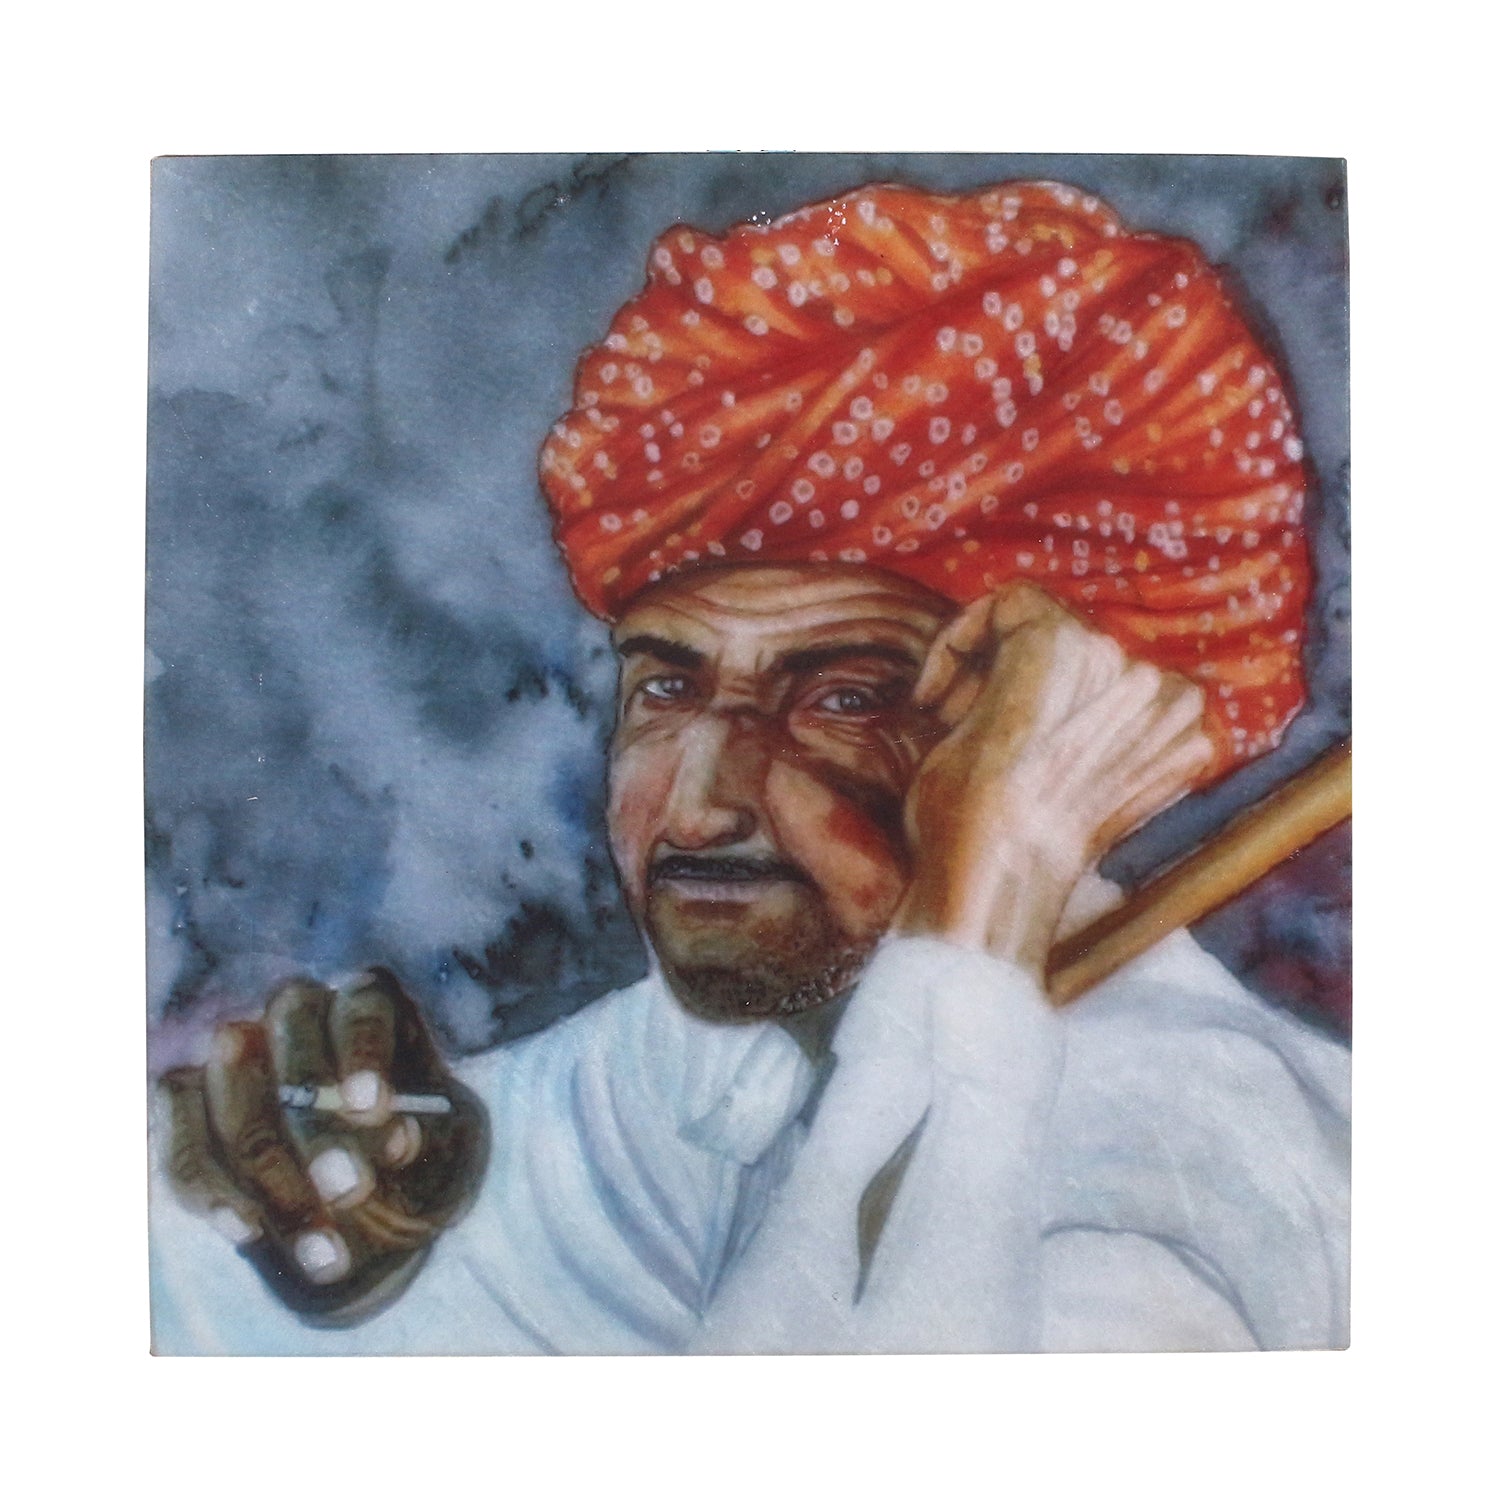 Rajasthani Man Wearing Turban Painting On Marble Square Tile 1